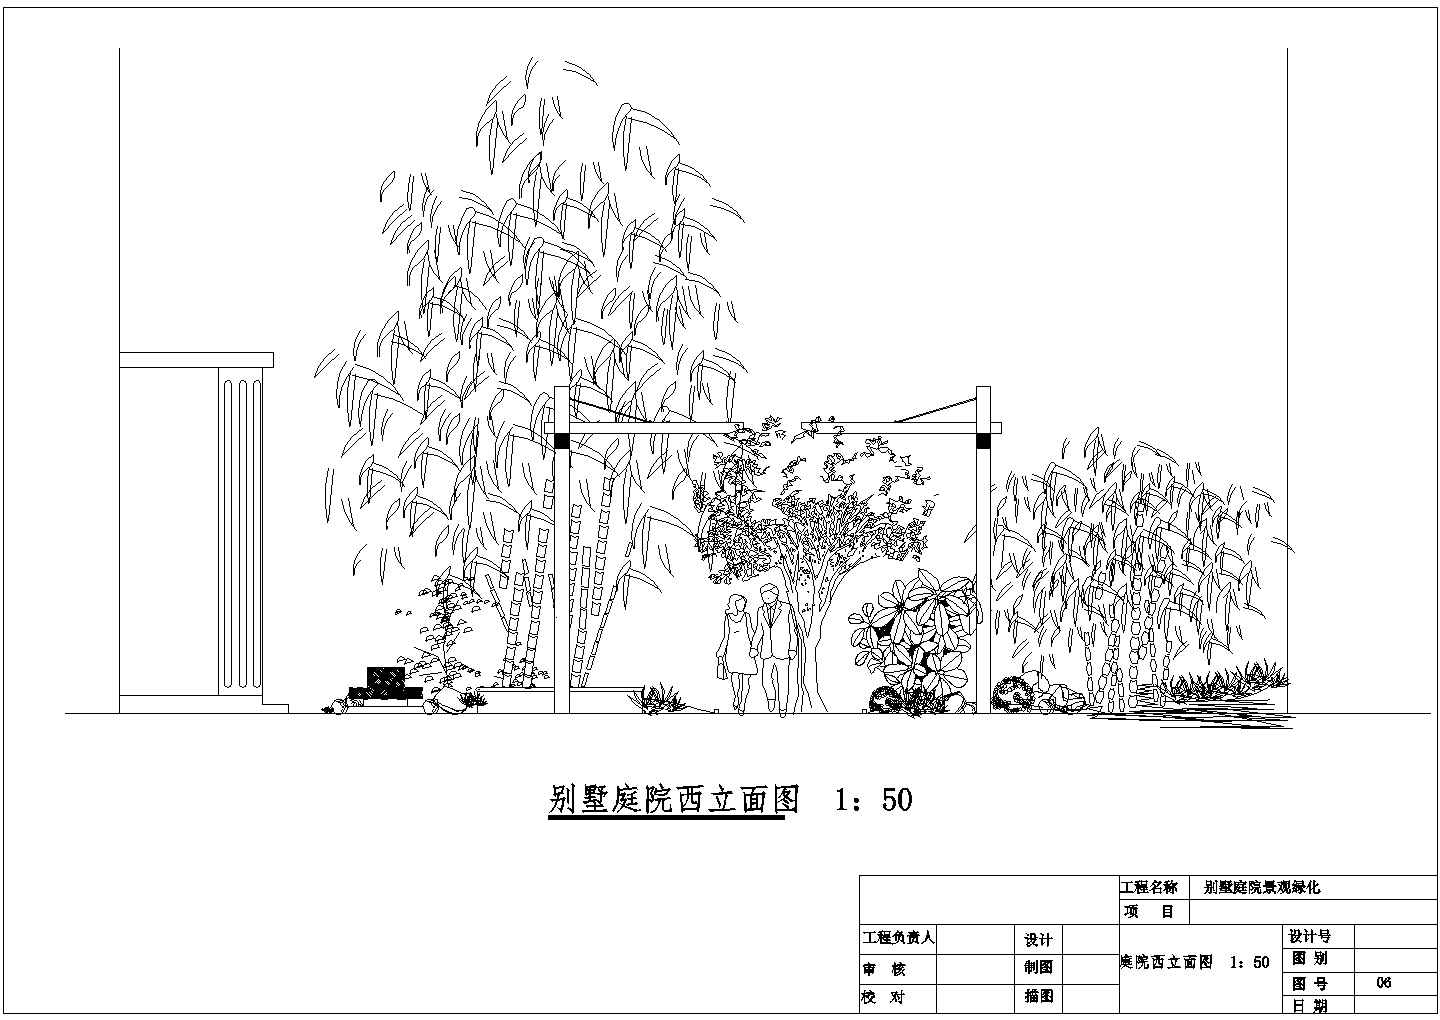 大型别墅庭院景观绿化设计施工cad规划全套方案图纸(带给排水电路图)